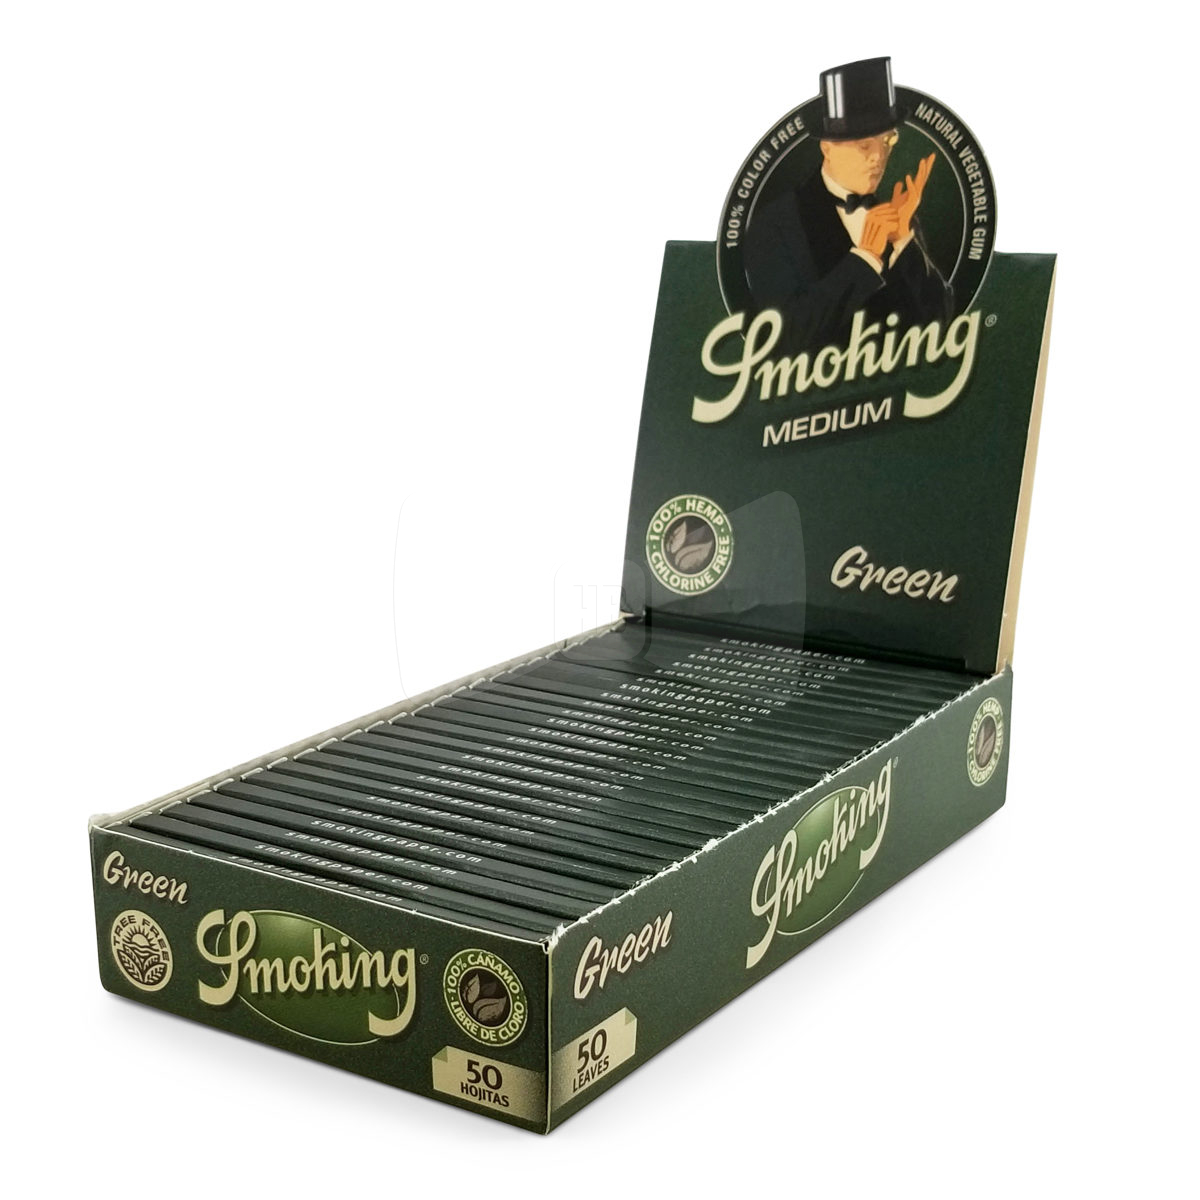 Smoking Brand Green 1 1/4 Full Box (24 packs)